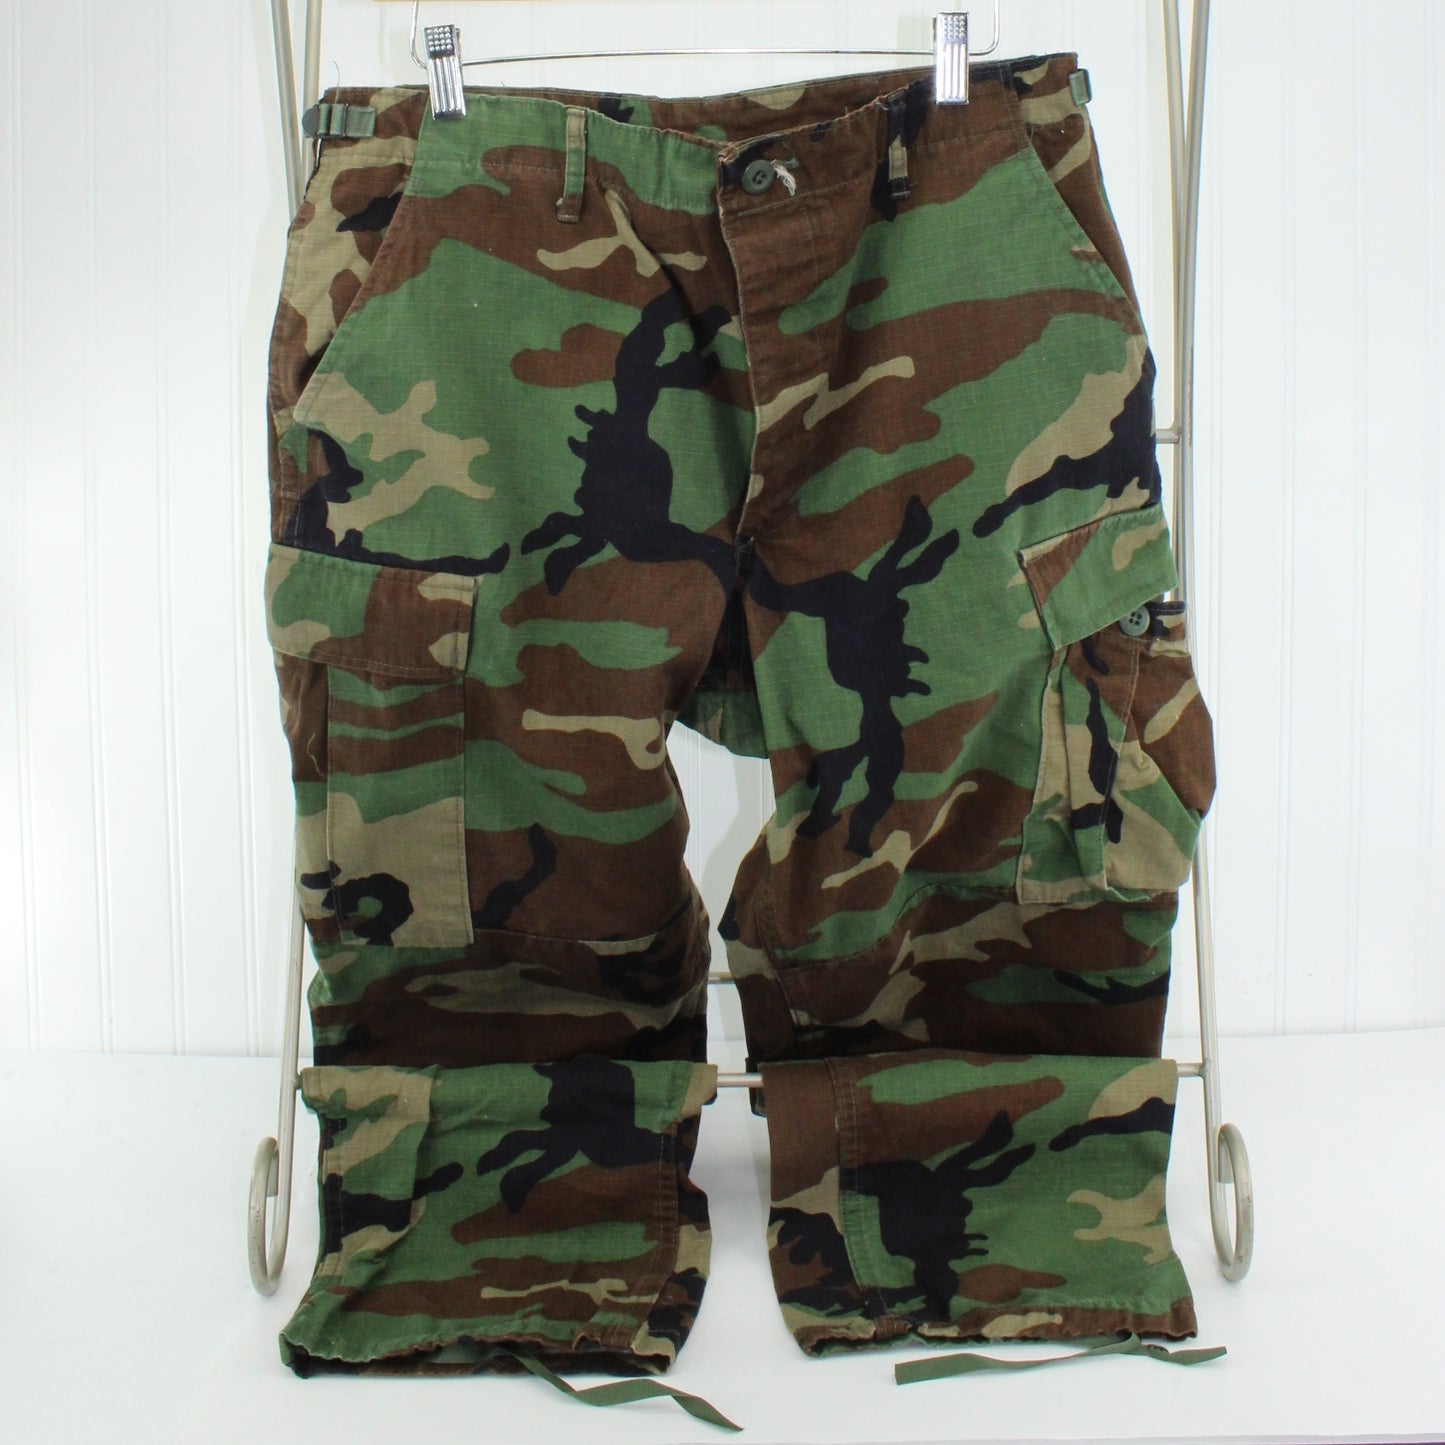 Propper 100% Cotton Camo Military Pants 6 Pockets Tie Leg M/R Adjust Waist Size